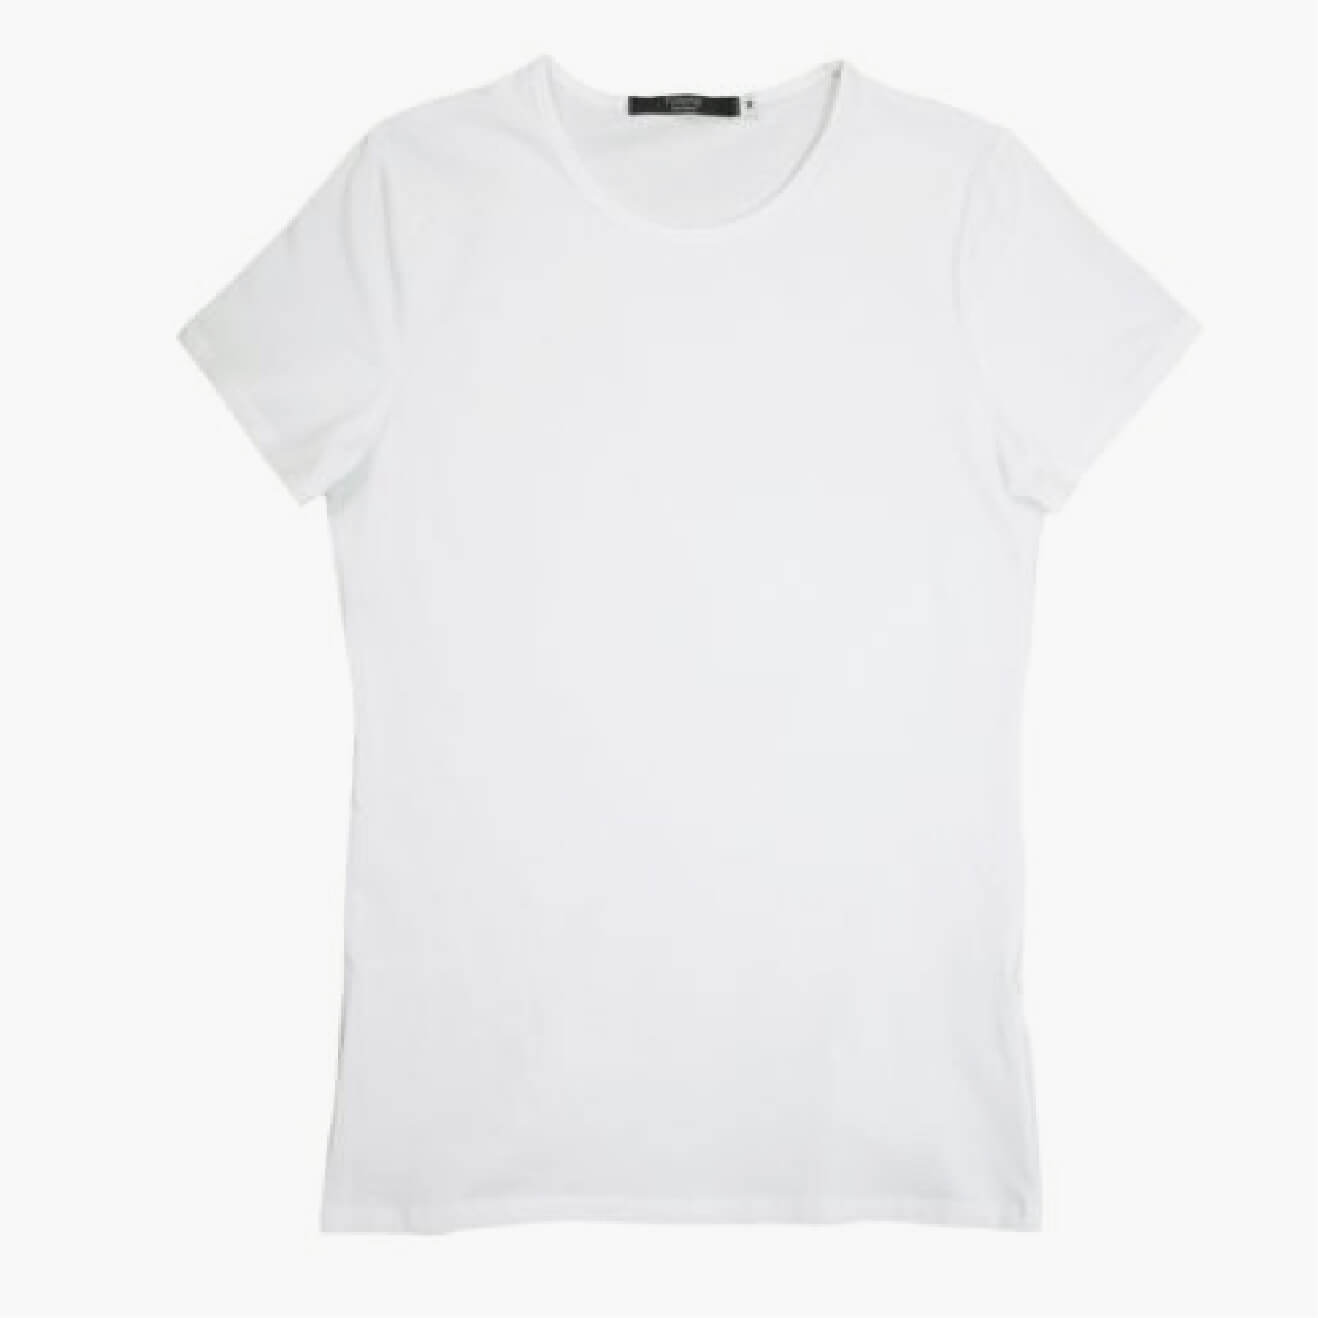 Camiseta blanca de manga corta de trabajo en peluquería y estética